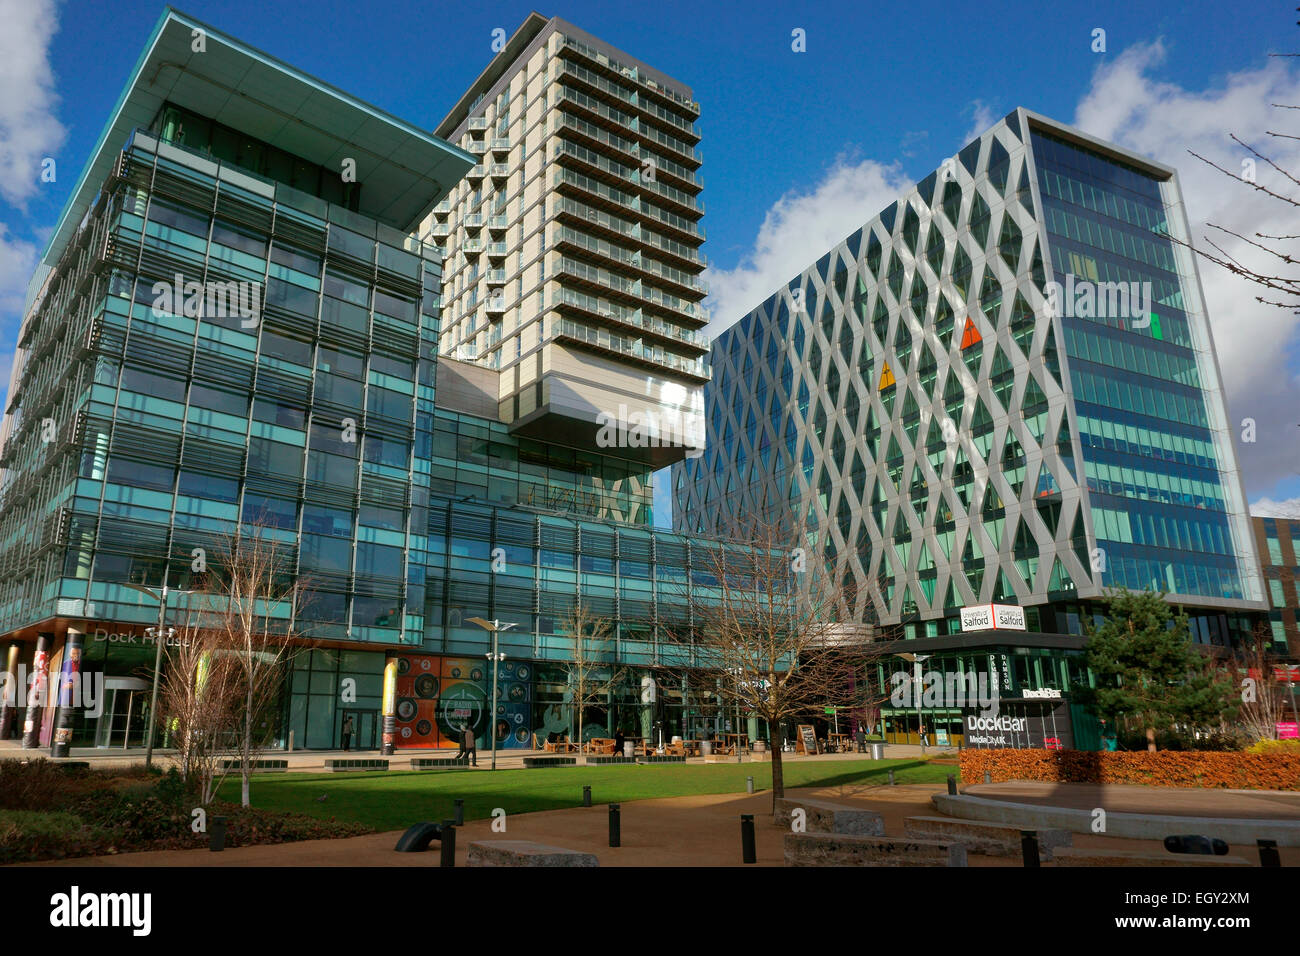 MediaCityUK bei Salford Quays, Greater Manchester, England, UK.  Haus in Teile der britischen Rundfunkanstalt BBC & ITV Stockfoto